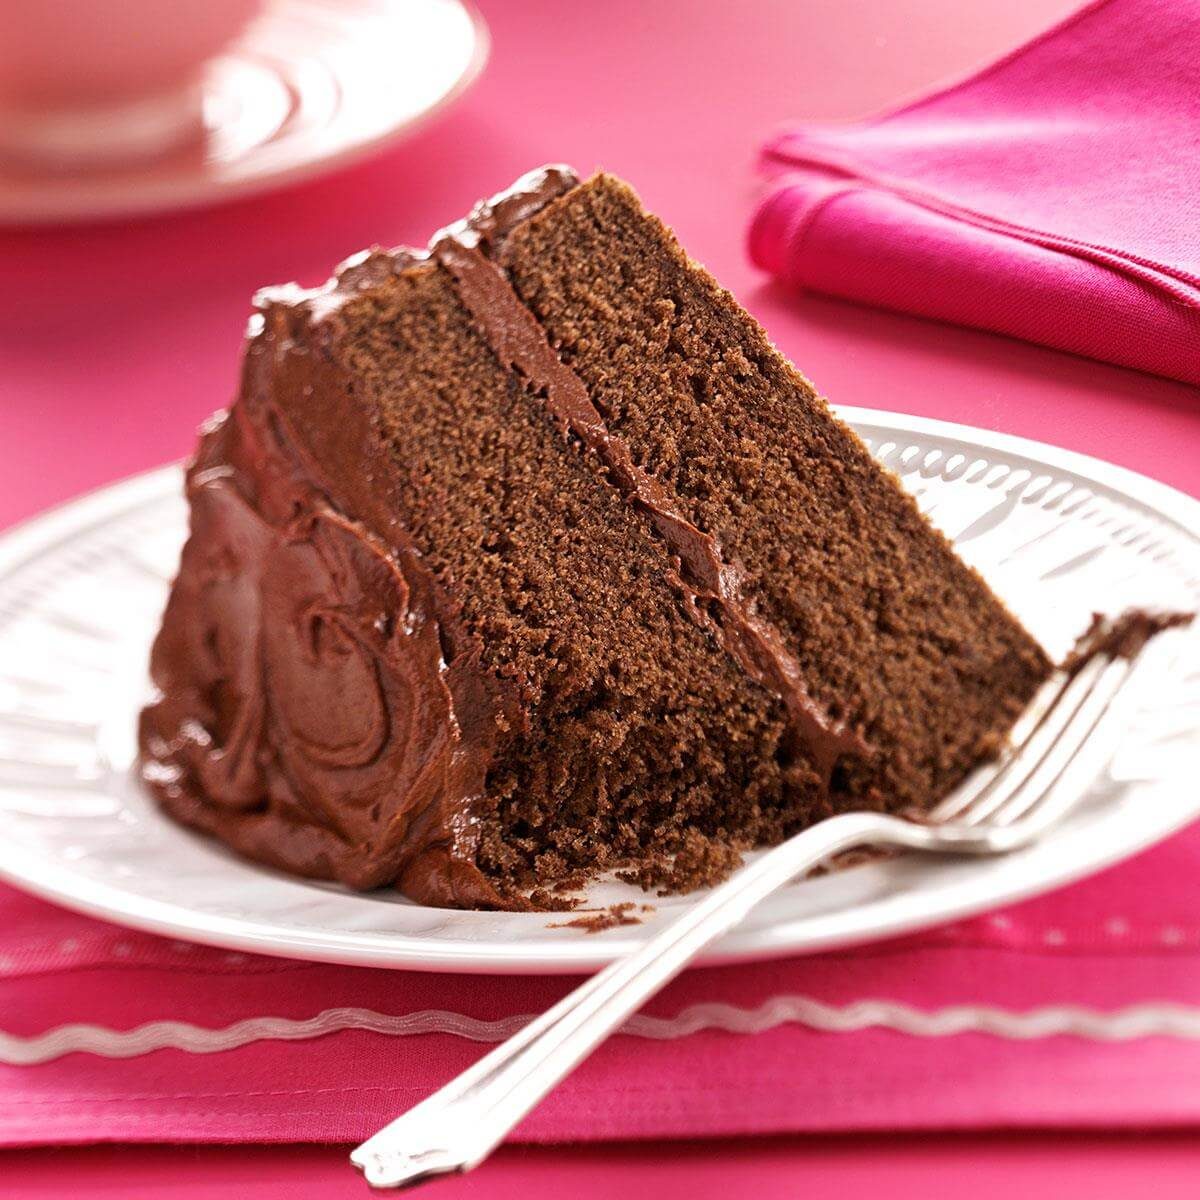 Chocolate Fudge Cake - Sunday Treats: Chocolate Fudge Cake / Before we ...